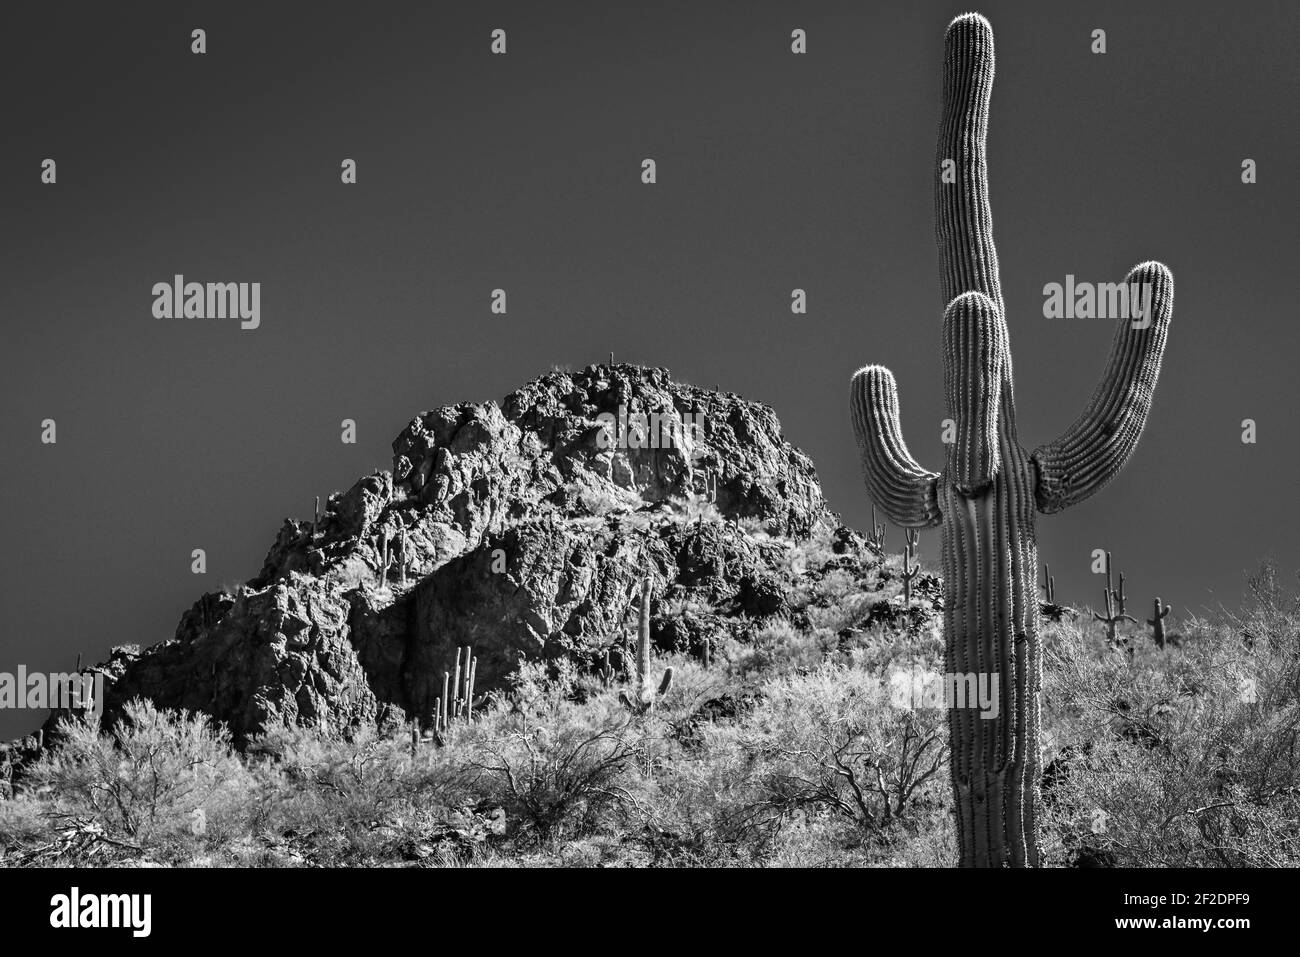 Un cactus saguaro à armes multiples, soulevé vers un ciel bleu au parc national de Picacho Peak, dans le désert de Sonoran, dans le sud de l'Arizona, en noir et blanc Banque D'Images